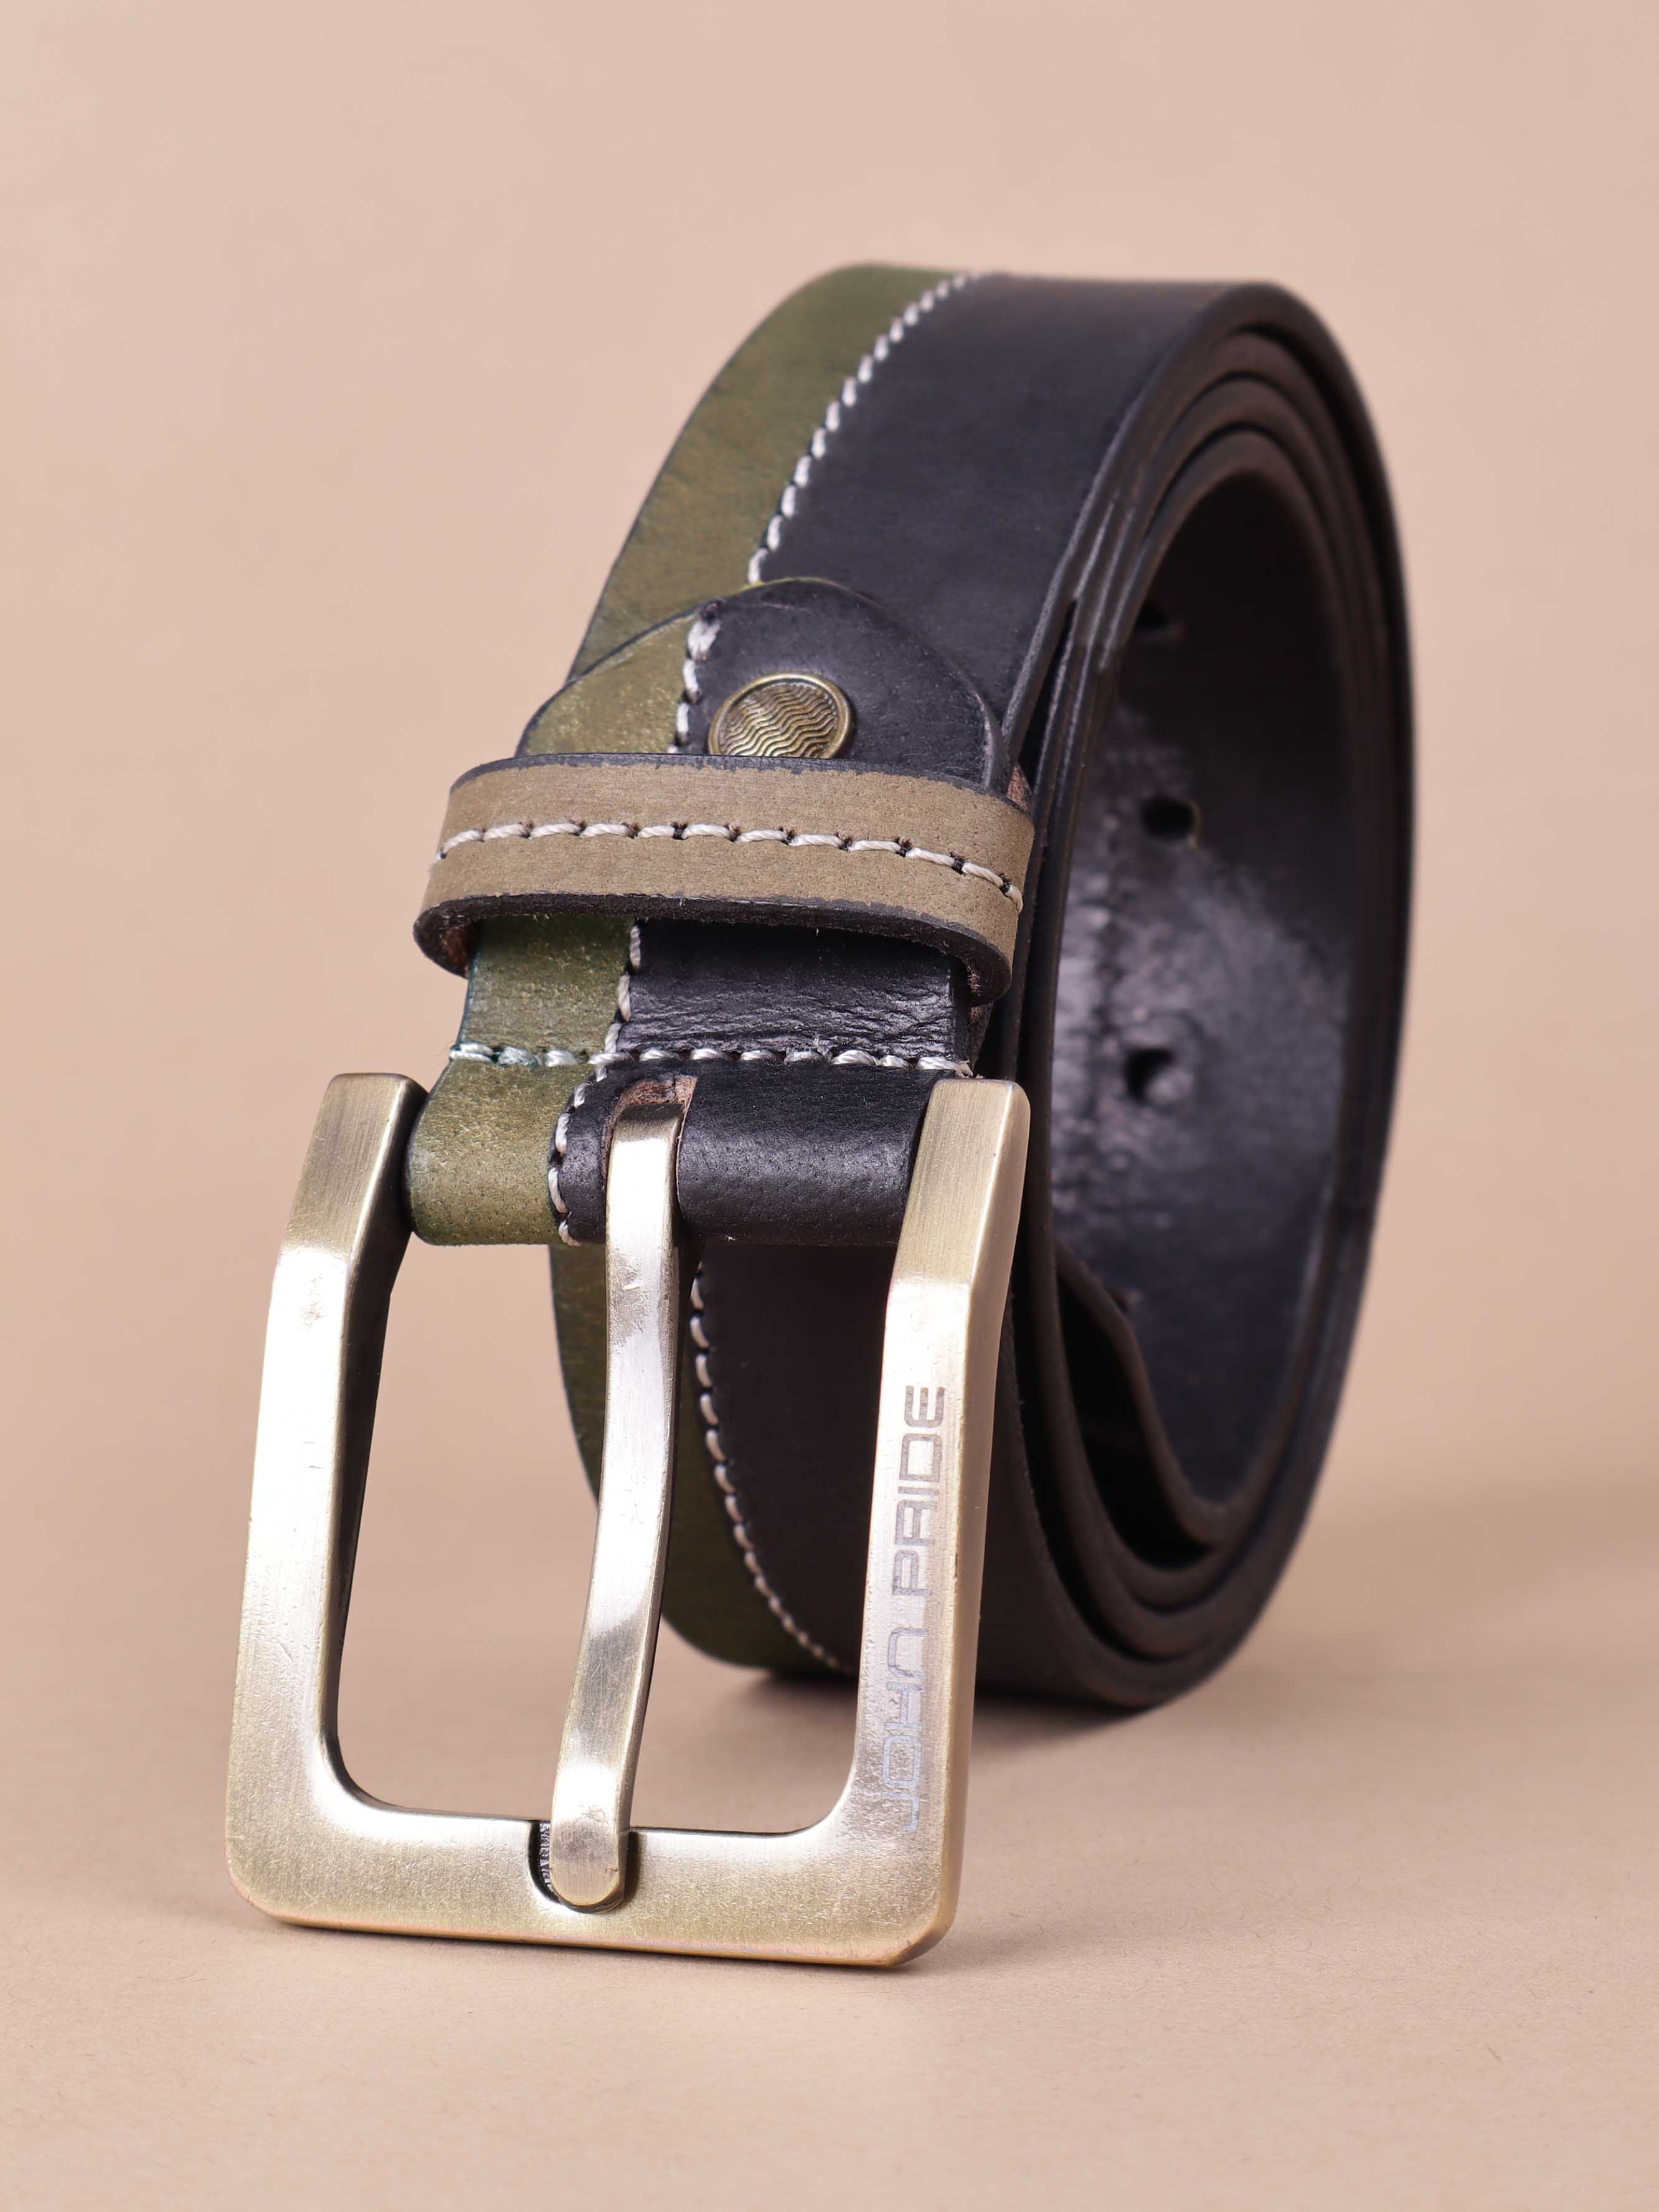 accessories/belts/JPBT1004/jpbt1004-1.jpg